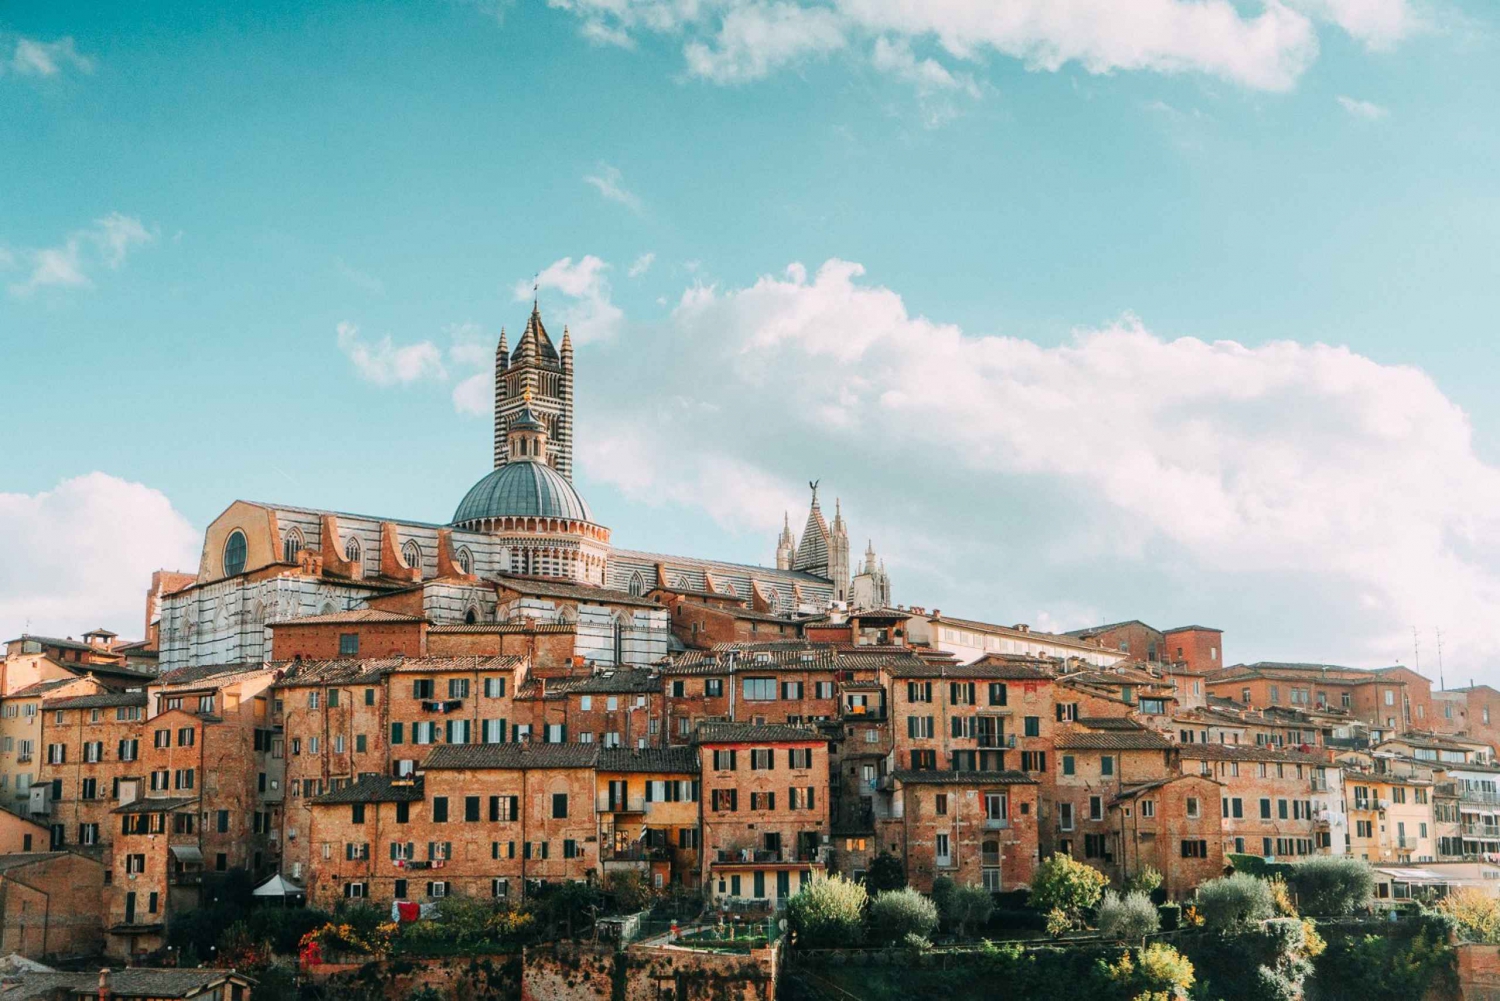 Excursão de meio dia a Siena saindo de Florença